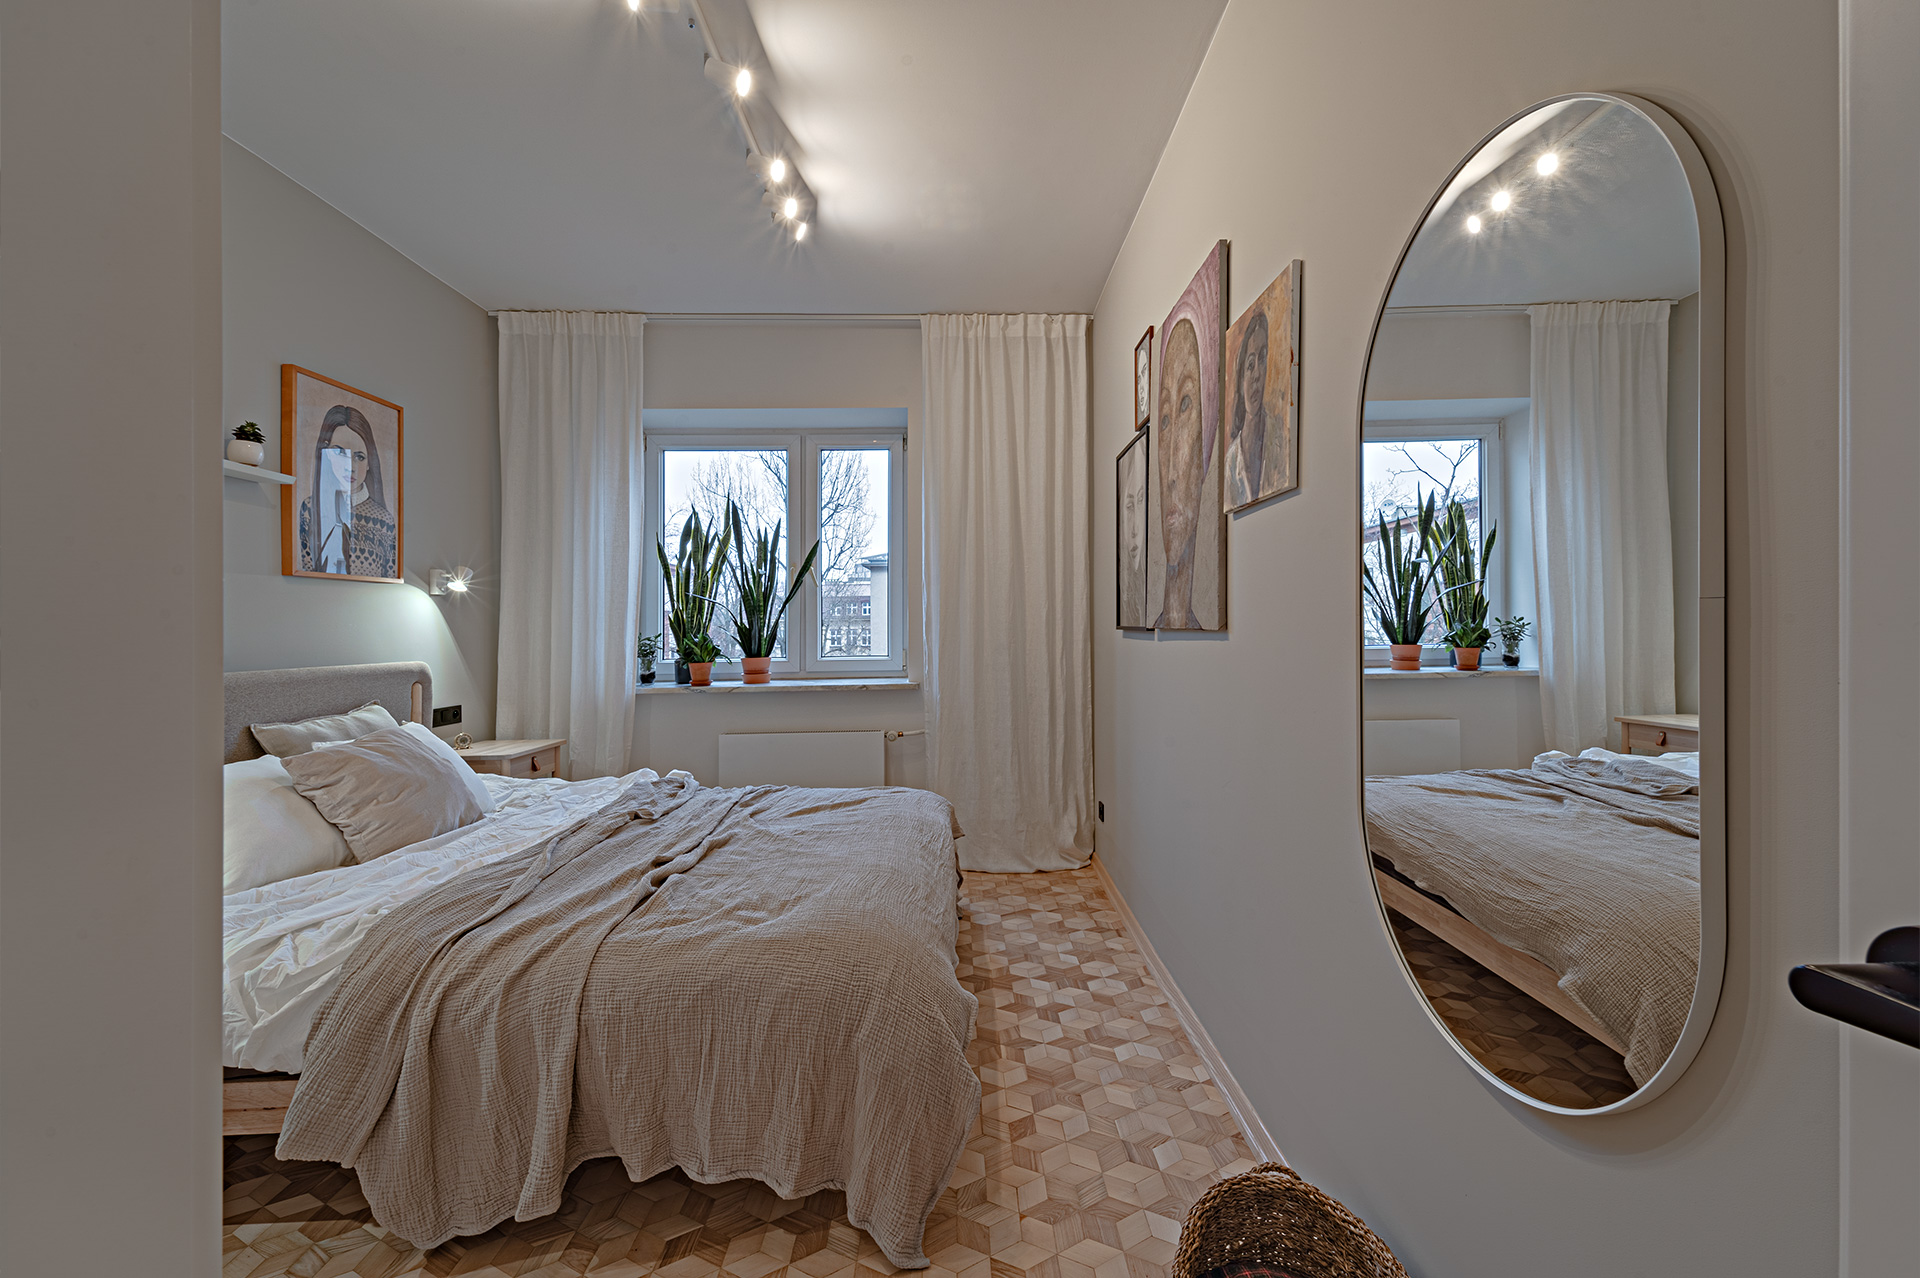 Przekonanie, że najłatwiej zasypia się w otoczeniu naturalnych materiałów i stosowanych barw, towarzyszyło nam przy projektowaniu tej sypialni.